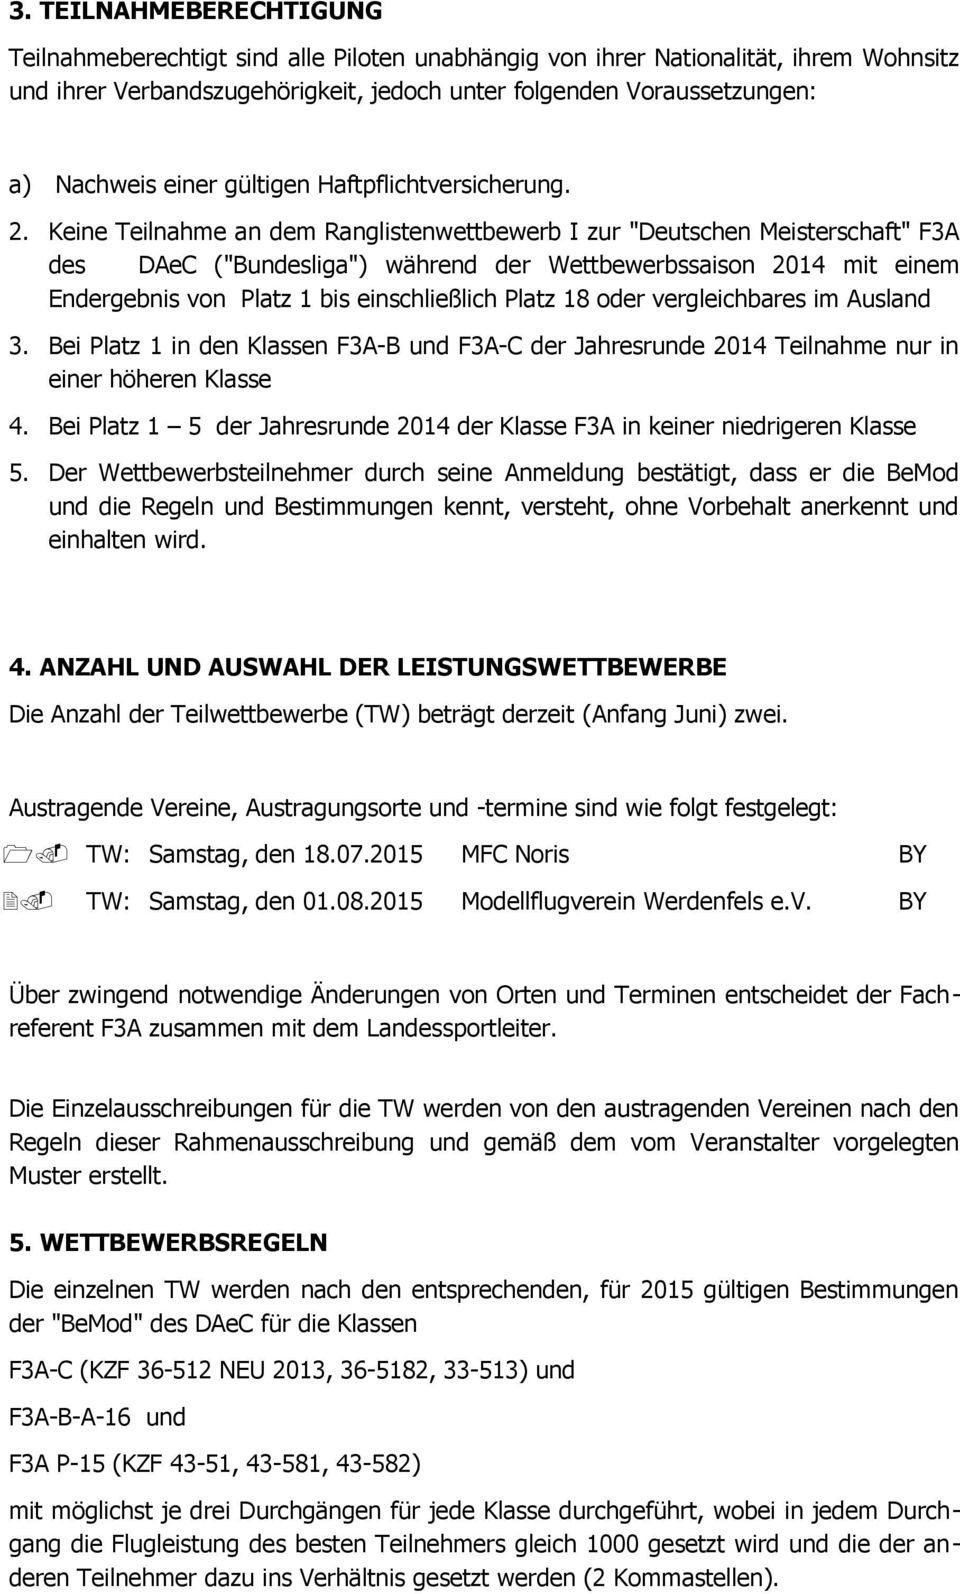 Keine Teilnahme an dem Ranglistenwettbewerb I zur "Deutschen Meisterschaft" F3A des DAeC ("Bundesliga") während der Wettbewerbssaison 2014 mit einem Endergebnis von Platz 1 bis einschließlich Platz